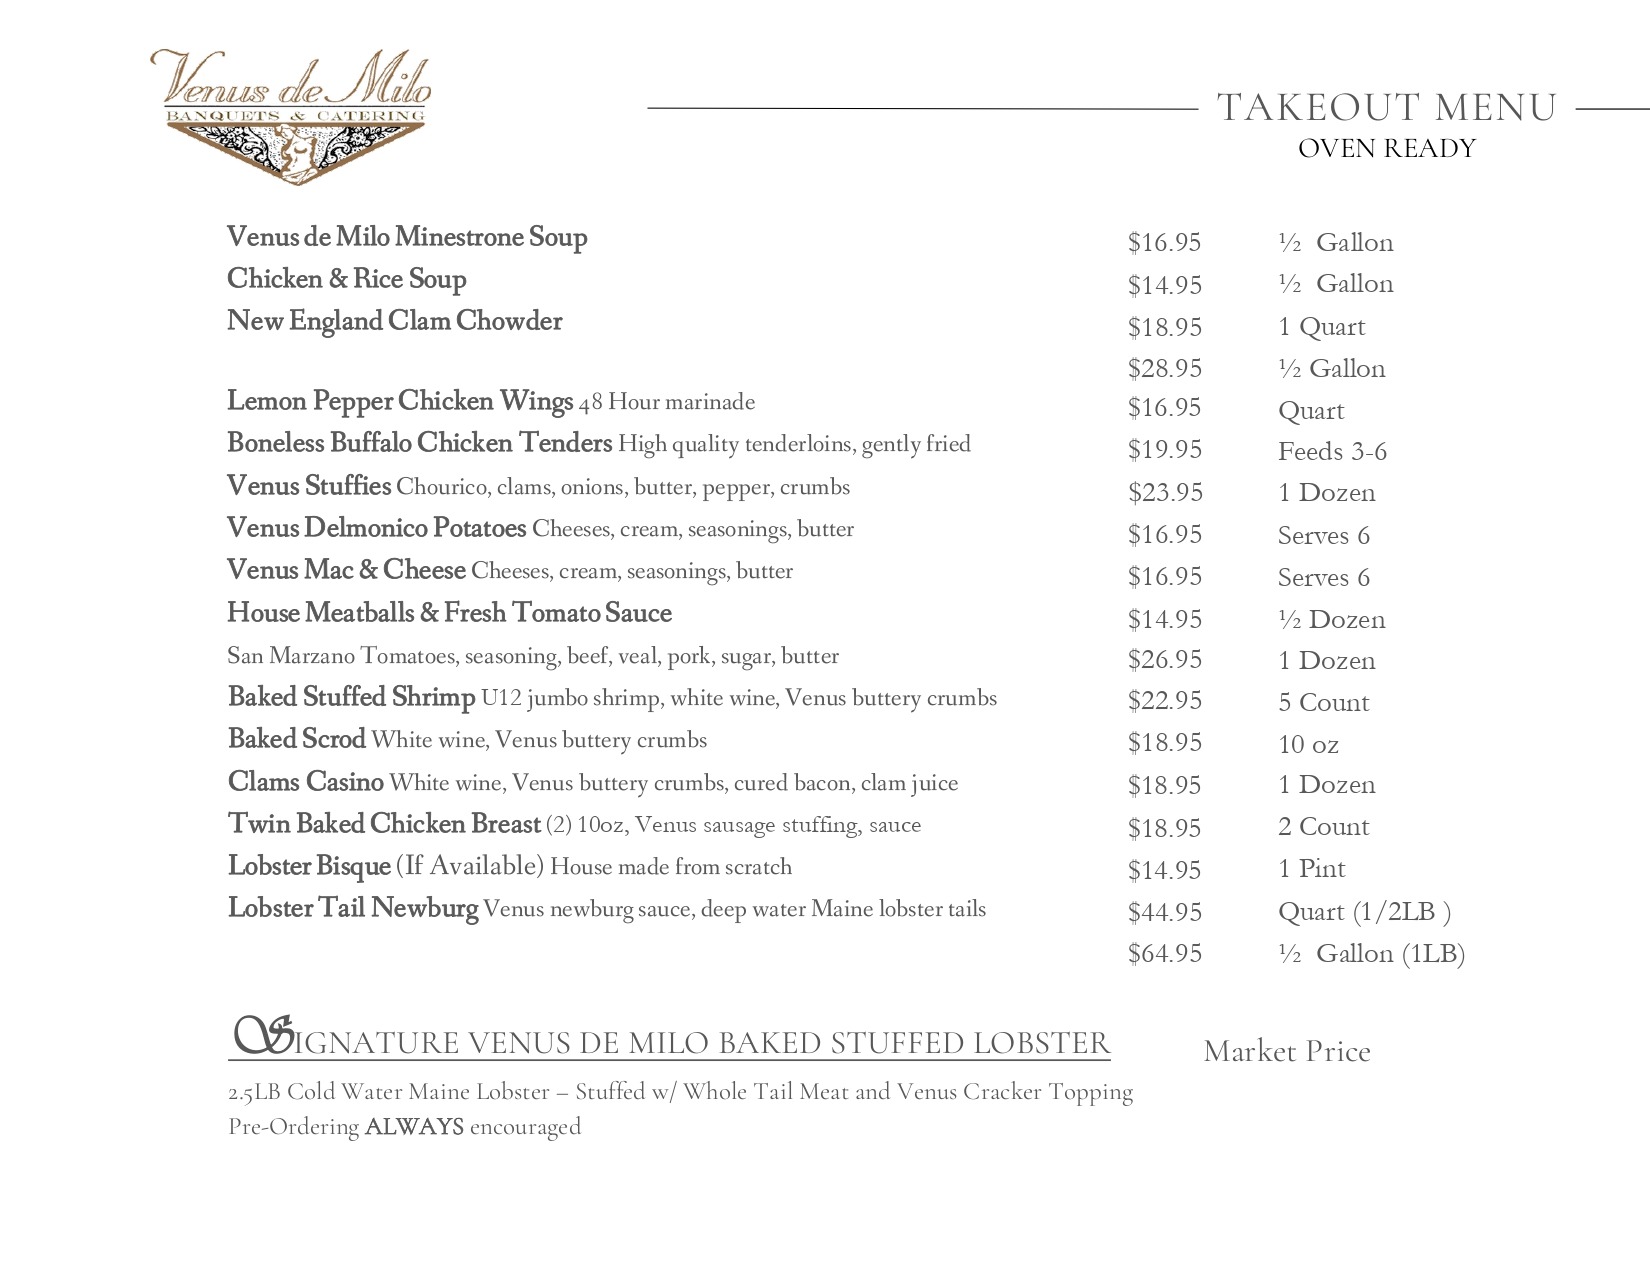 Takeout menu